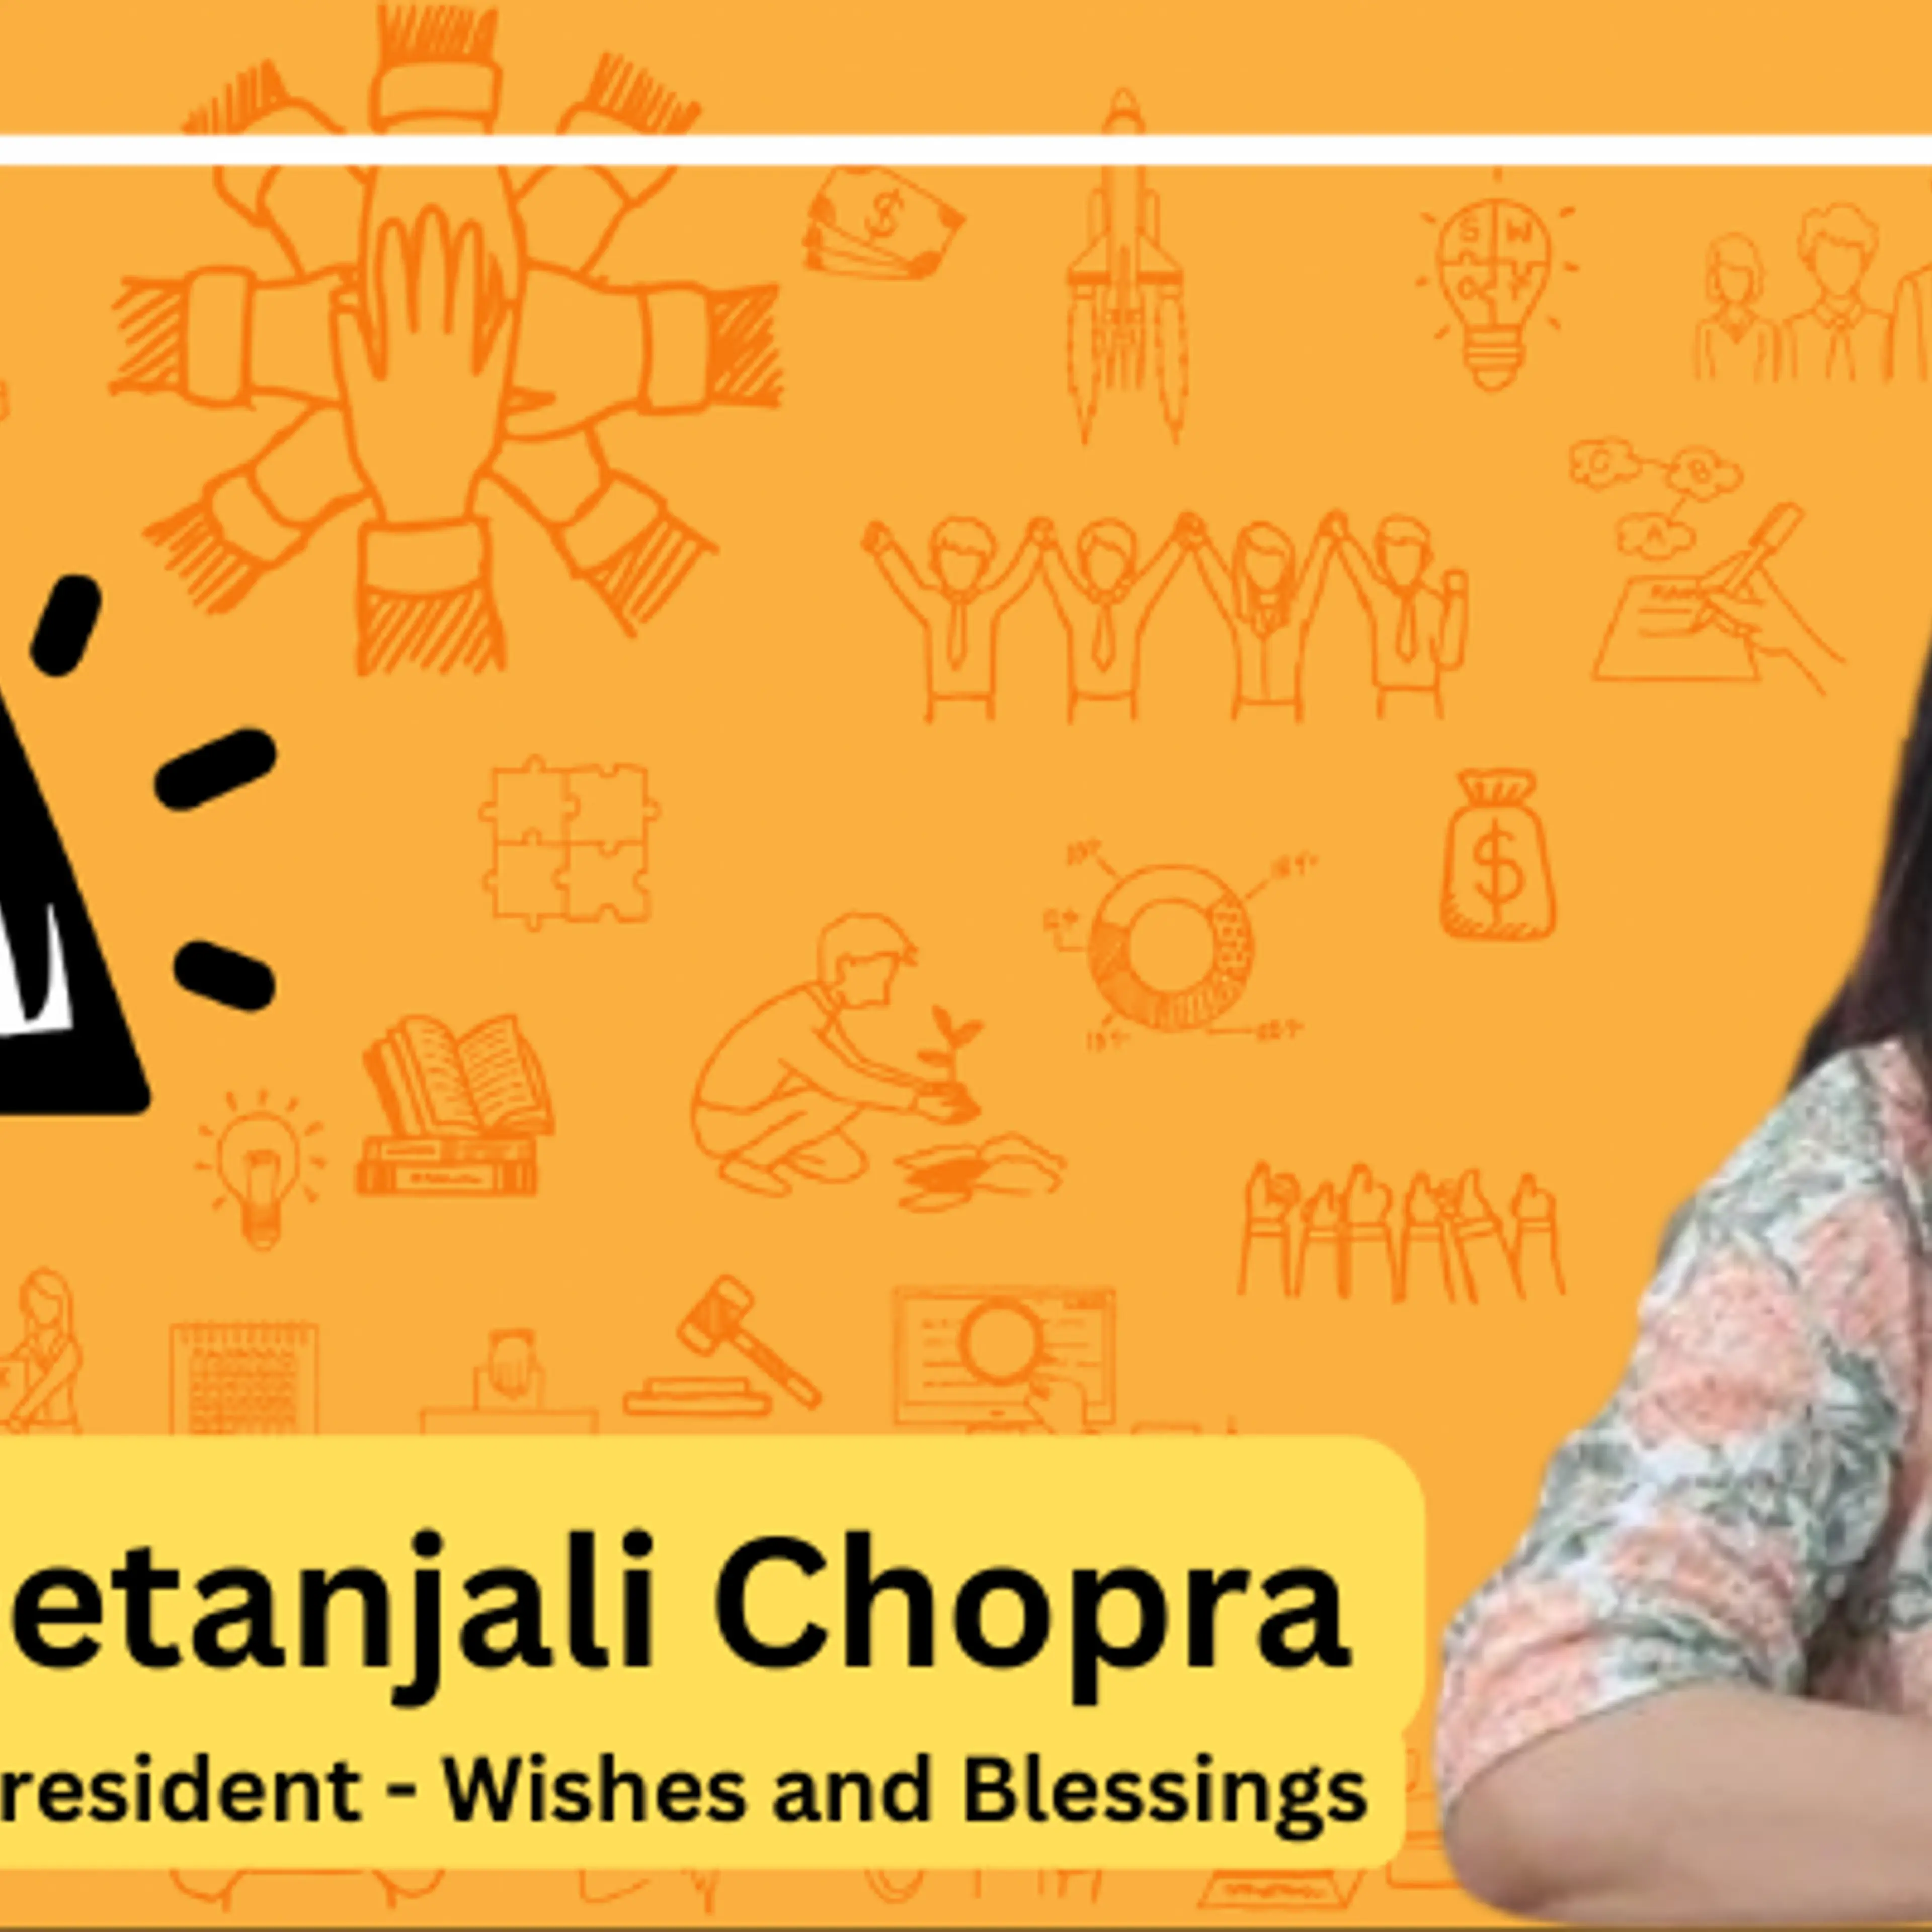 10 वर्षों से बच्चों, महिलाओं और बुजुर्गों का जीवन बेहतर बना रहा है डॉ. गीतांजलि चोपड़ा का एनजीओ Wishes and Blessings